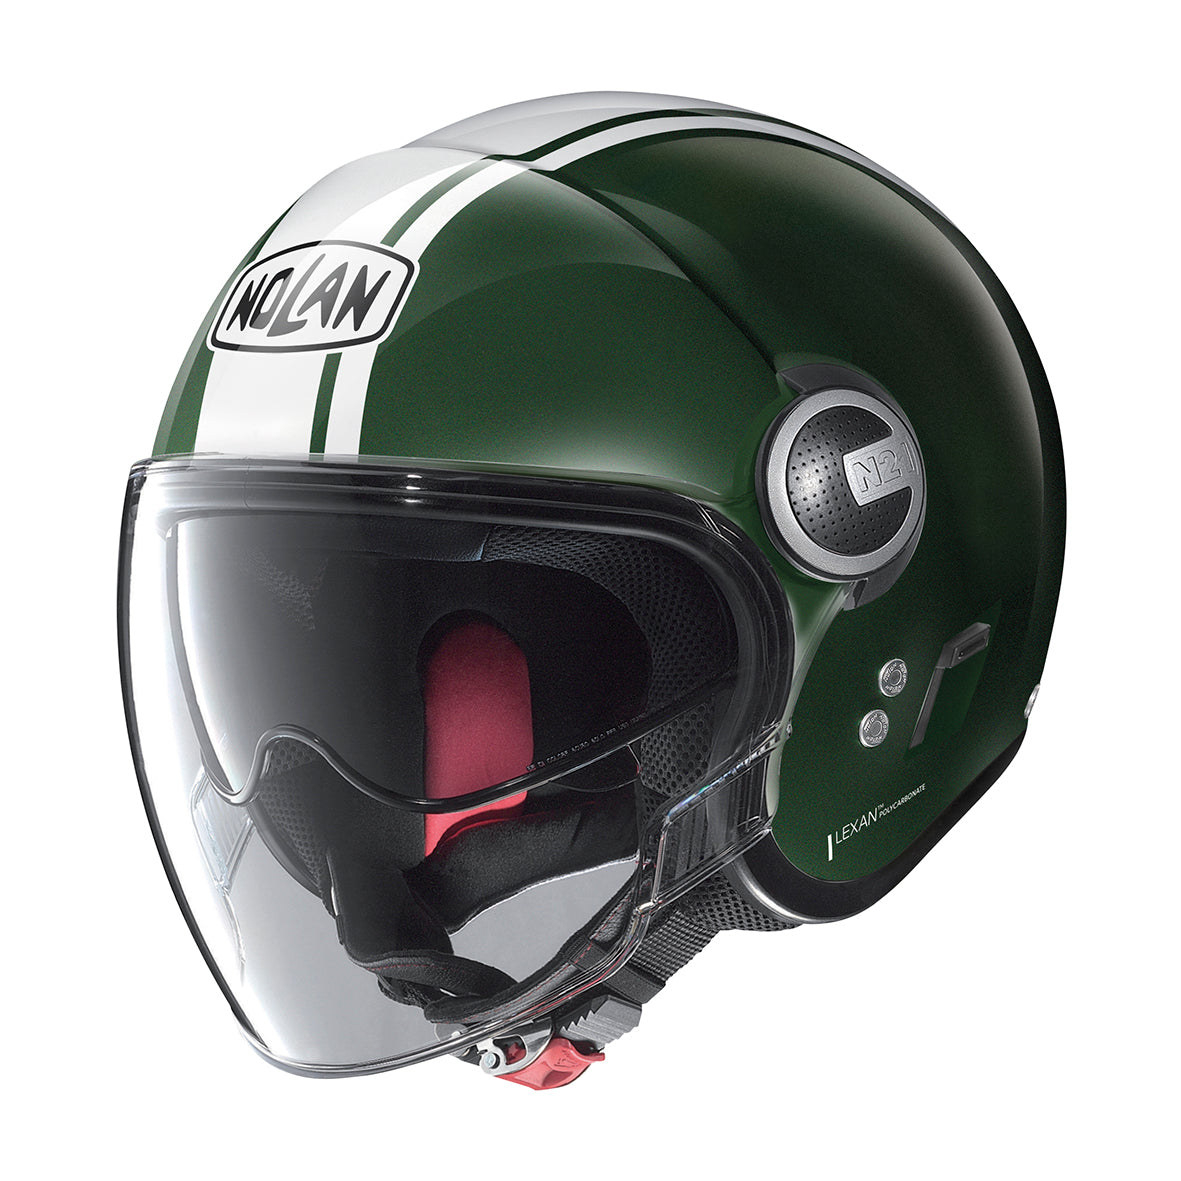 Nolan N21 Visor Dolce Vita 98 Forest Green Helmet